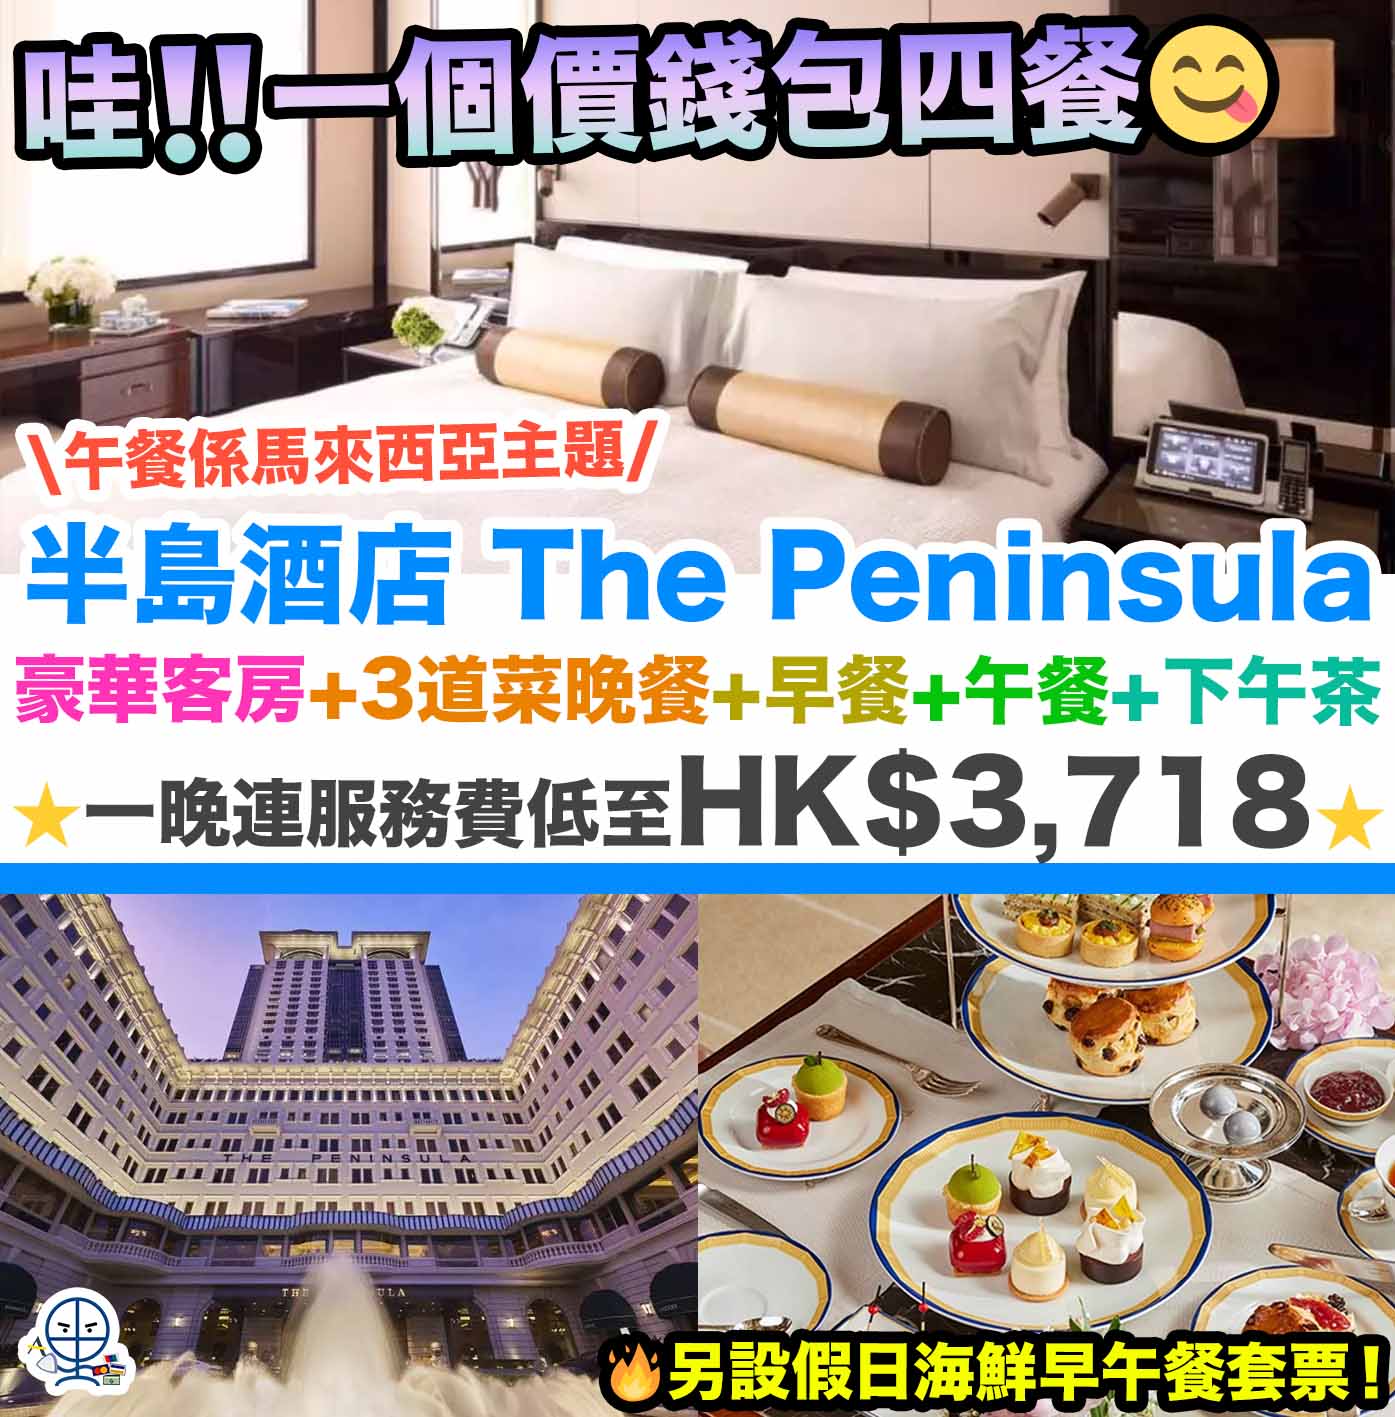 半島酒店-peninsula-優惠-staycation-The Peninsula Hotel Hong Kong Staycation-staycation package-香港半島酒店  